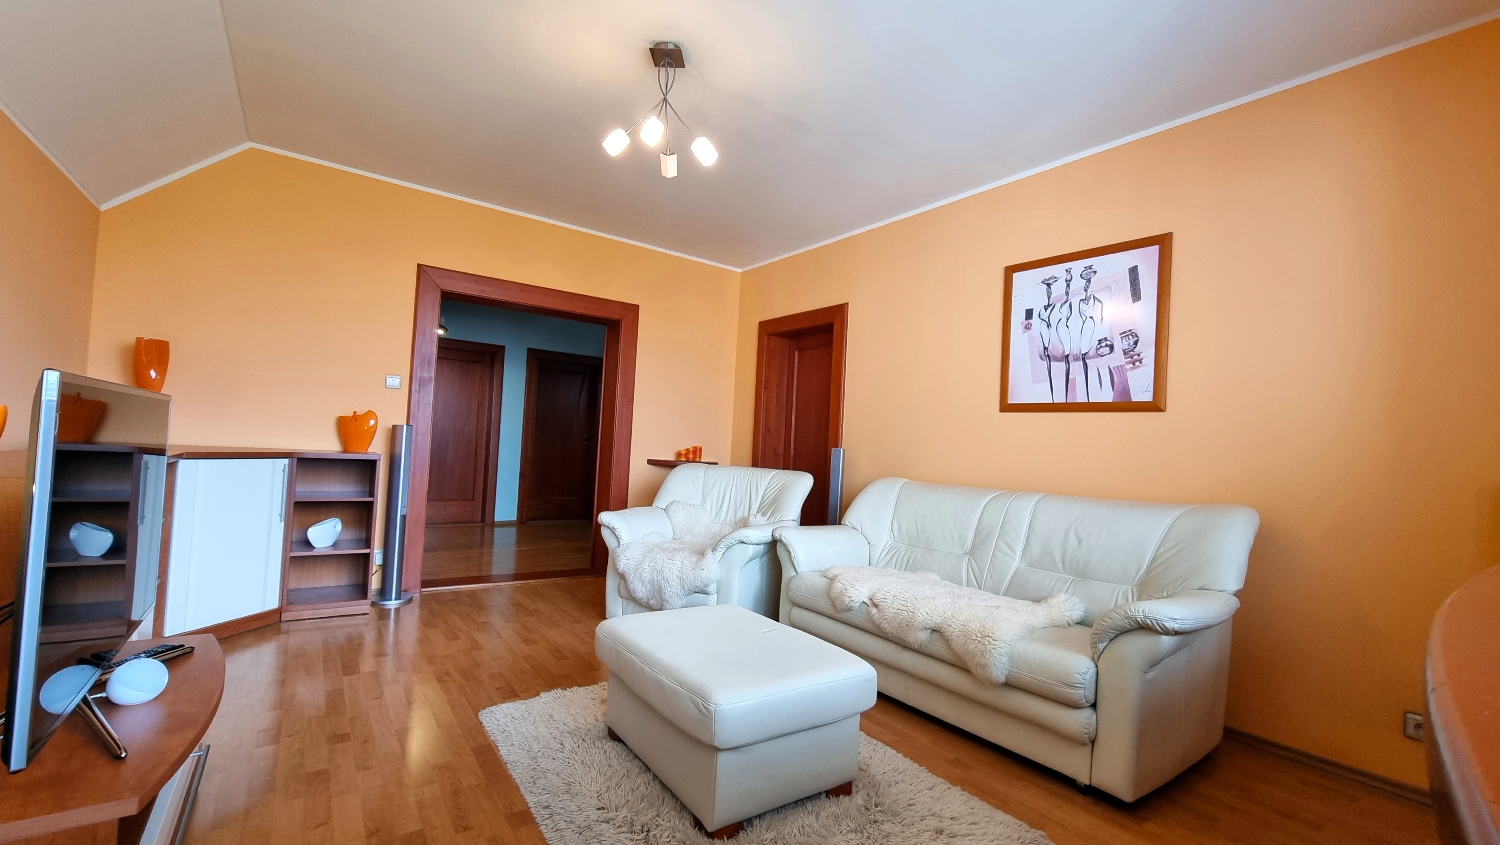 Nadštandardný 5-izbový byt s loggiou a šatníkom, zrekonštruovaný, výborná lokalita, predaj, Žilina - Solinky, Cena: 239.900,- EUR